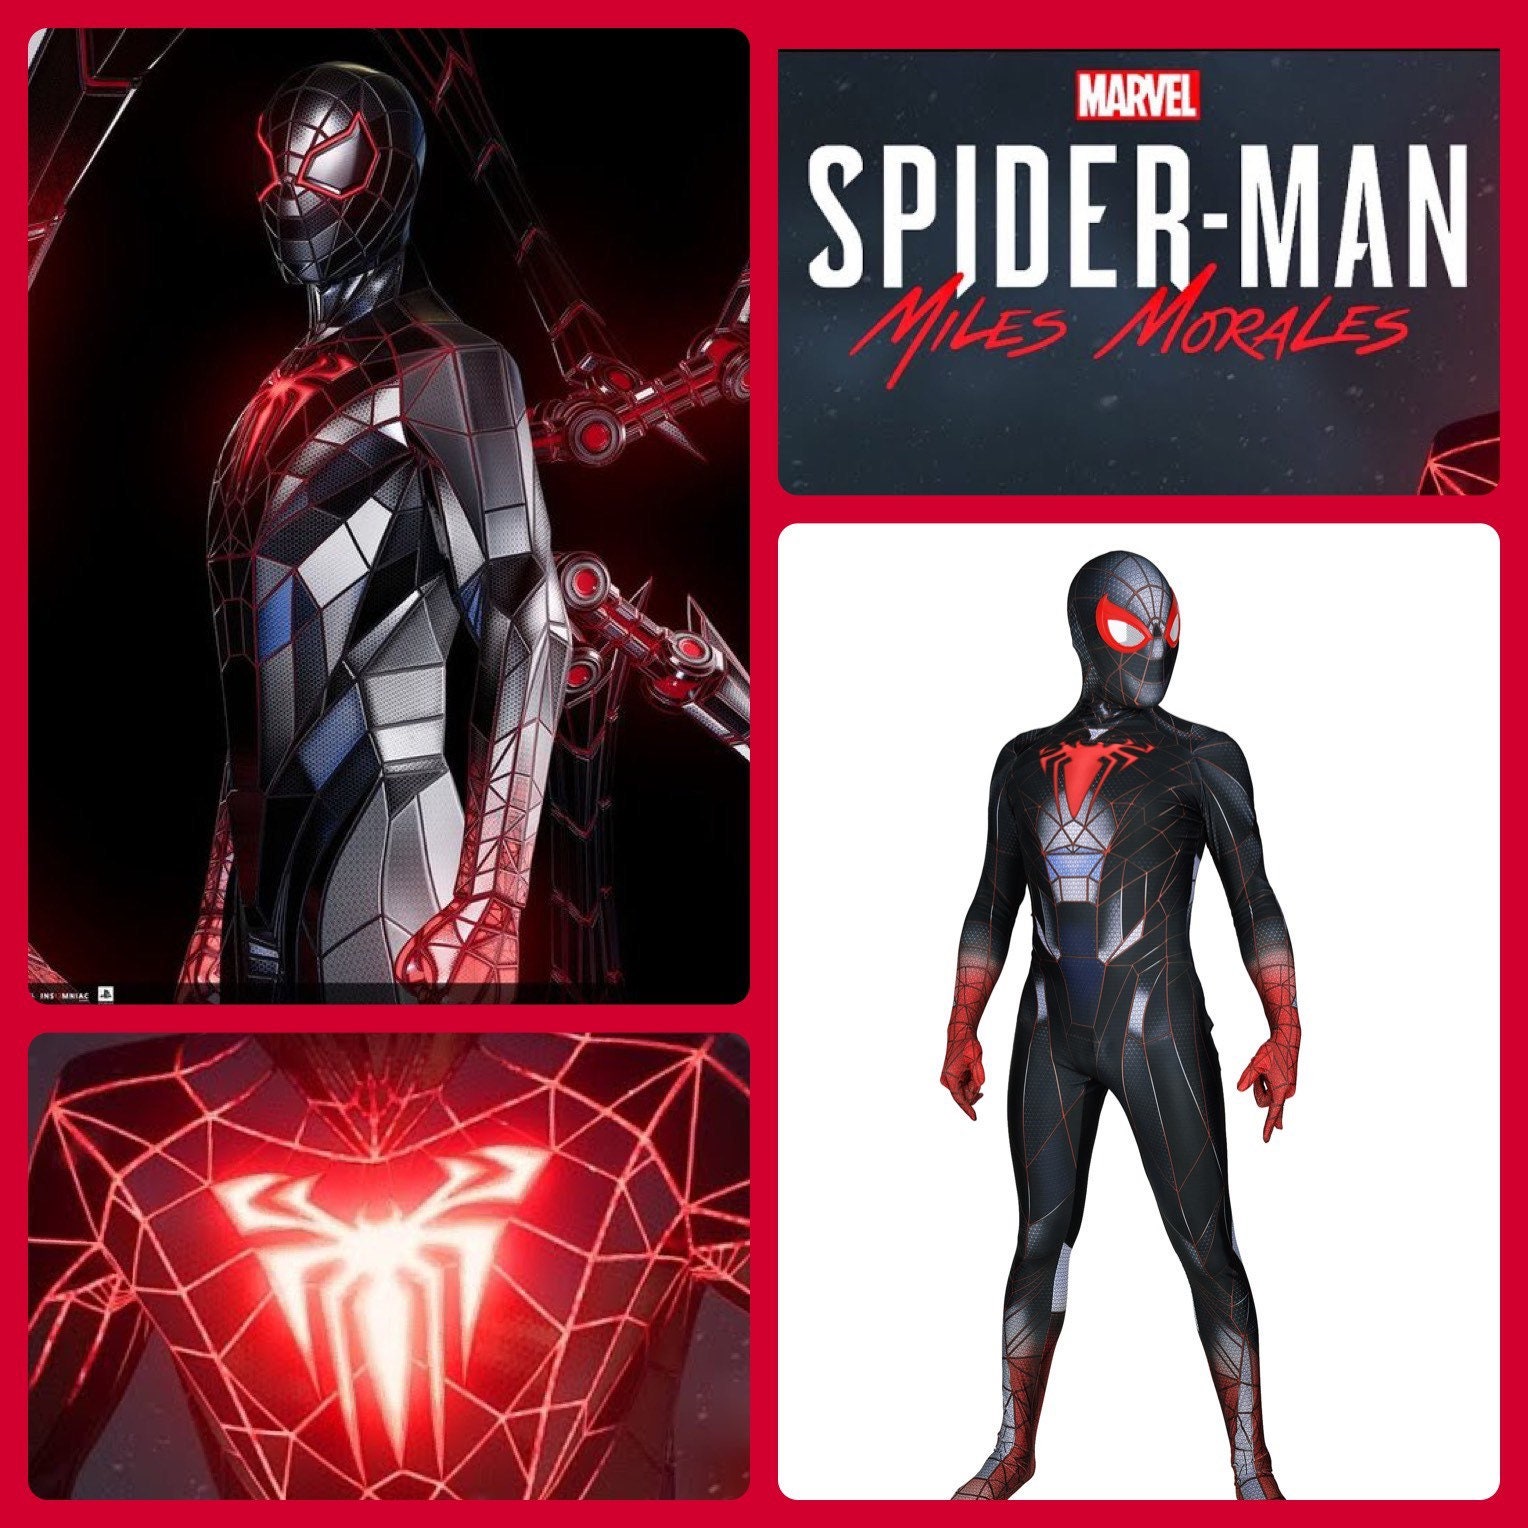 Costume De Super-héros Spiderman Pour Enfants, Ensemble Body De